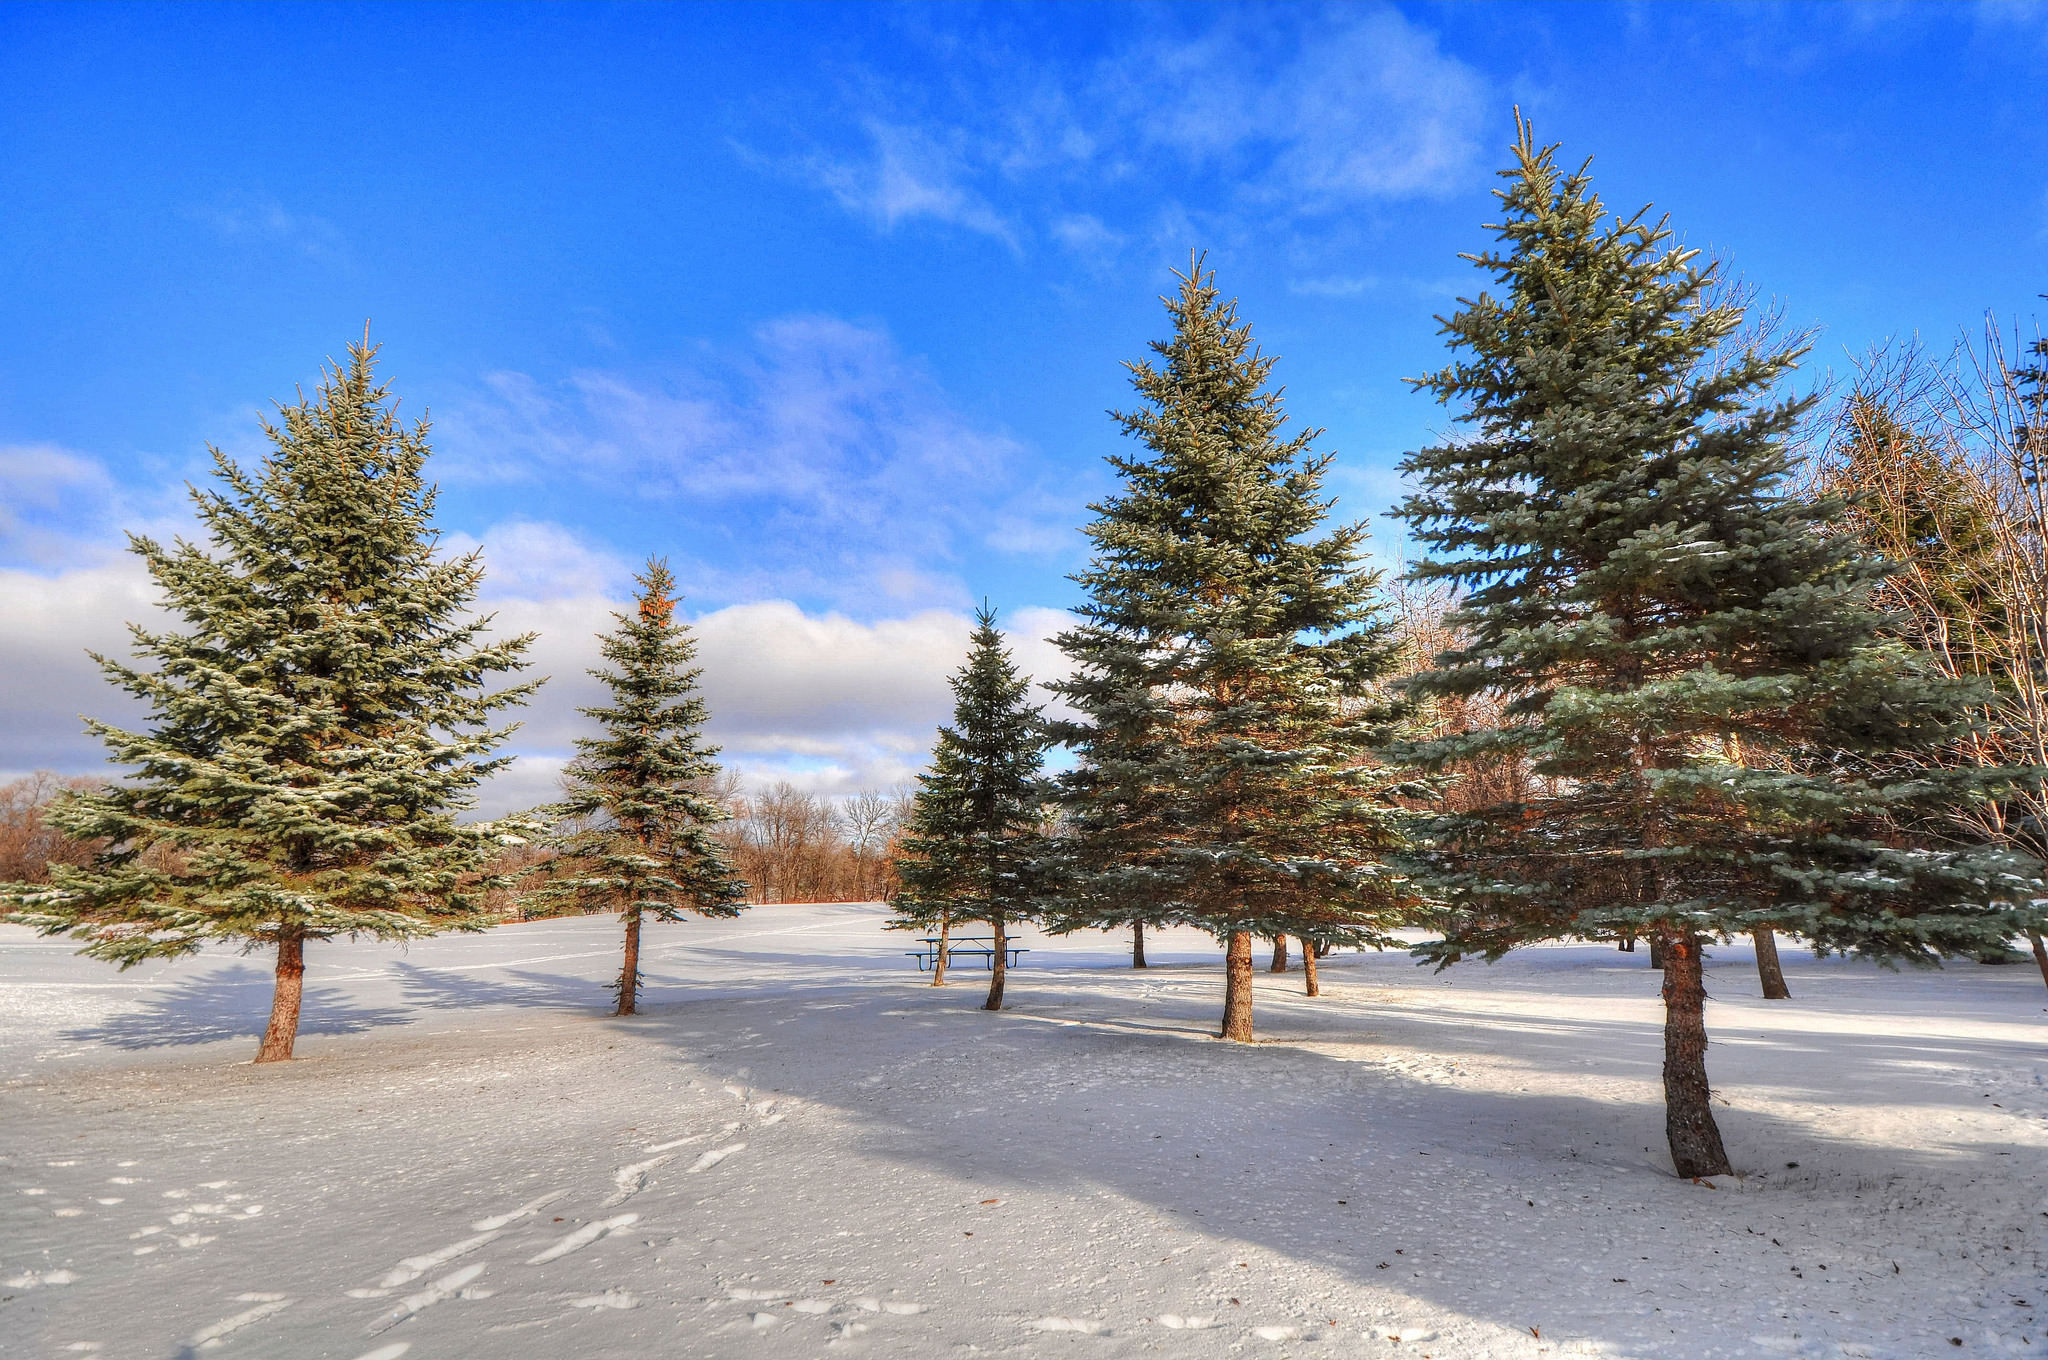 Скачать обои бесплатно Снег, Зима, Природа, Лес, Деревья картинка на рабочий стол ПК